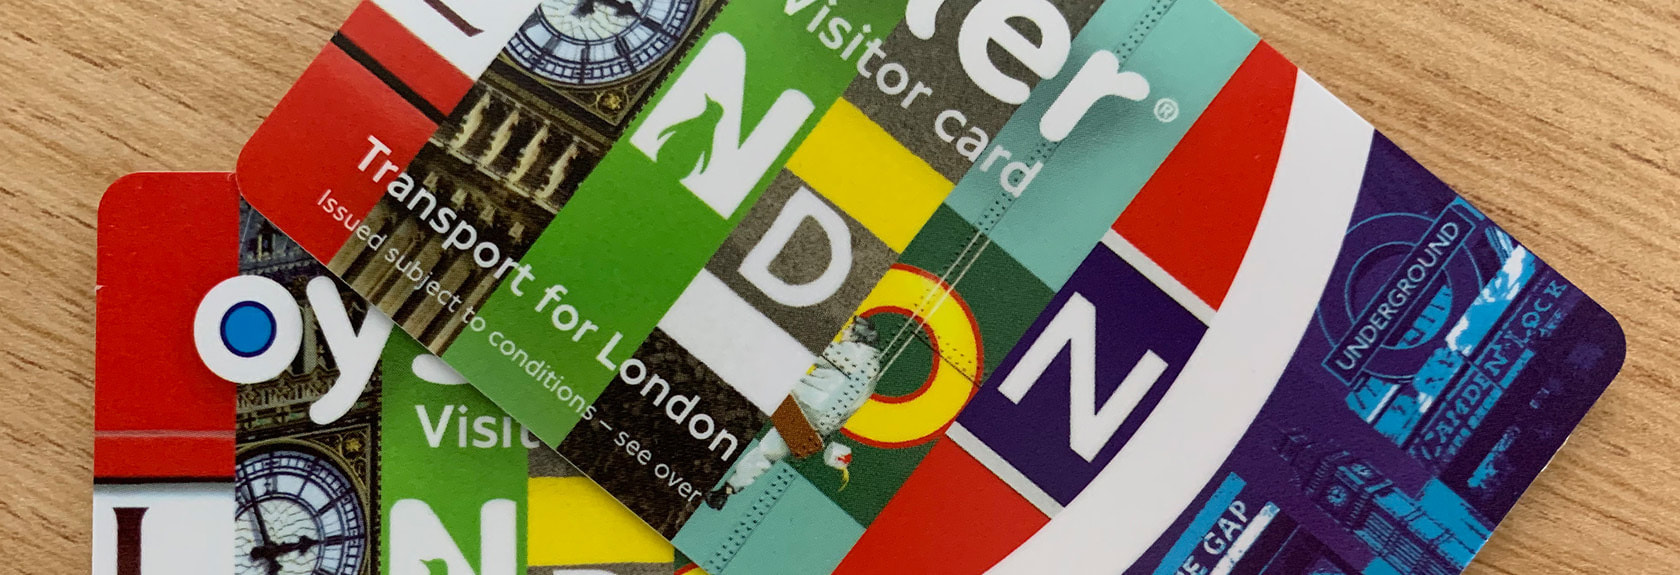 Como em muitos países, Londres tem seu próprio cartão de transporte público com crédito que pode ser usado para pagar o transporte público em Londres.